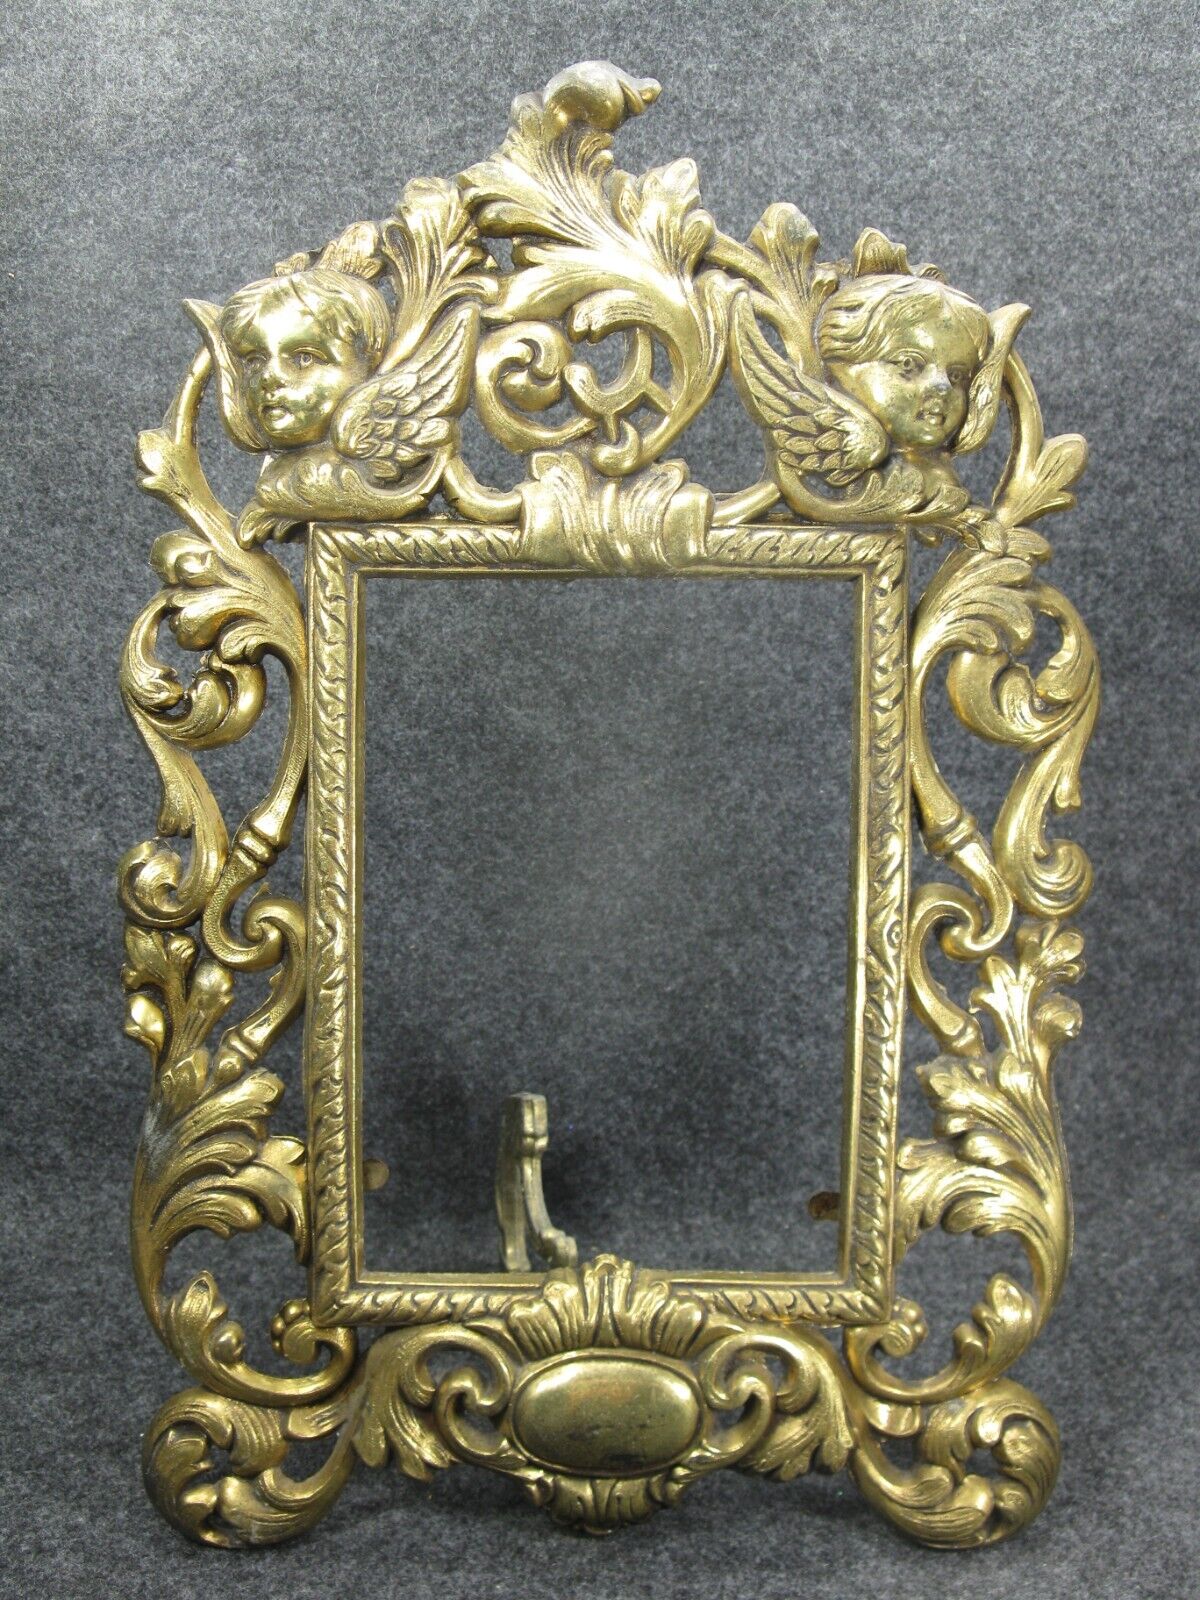 Ornate Victorian Brass Finish Cherub Mirror Picture Frame Vintage